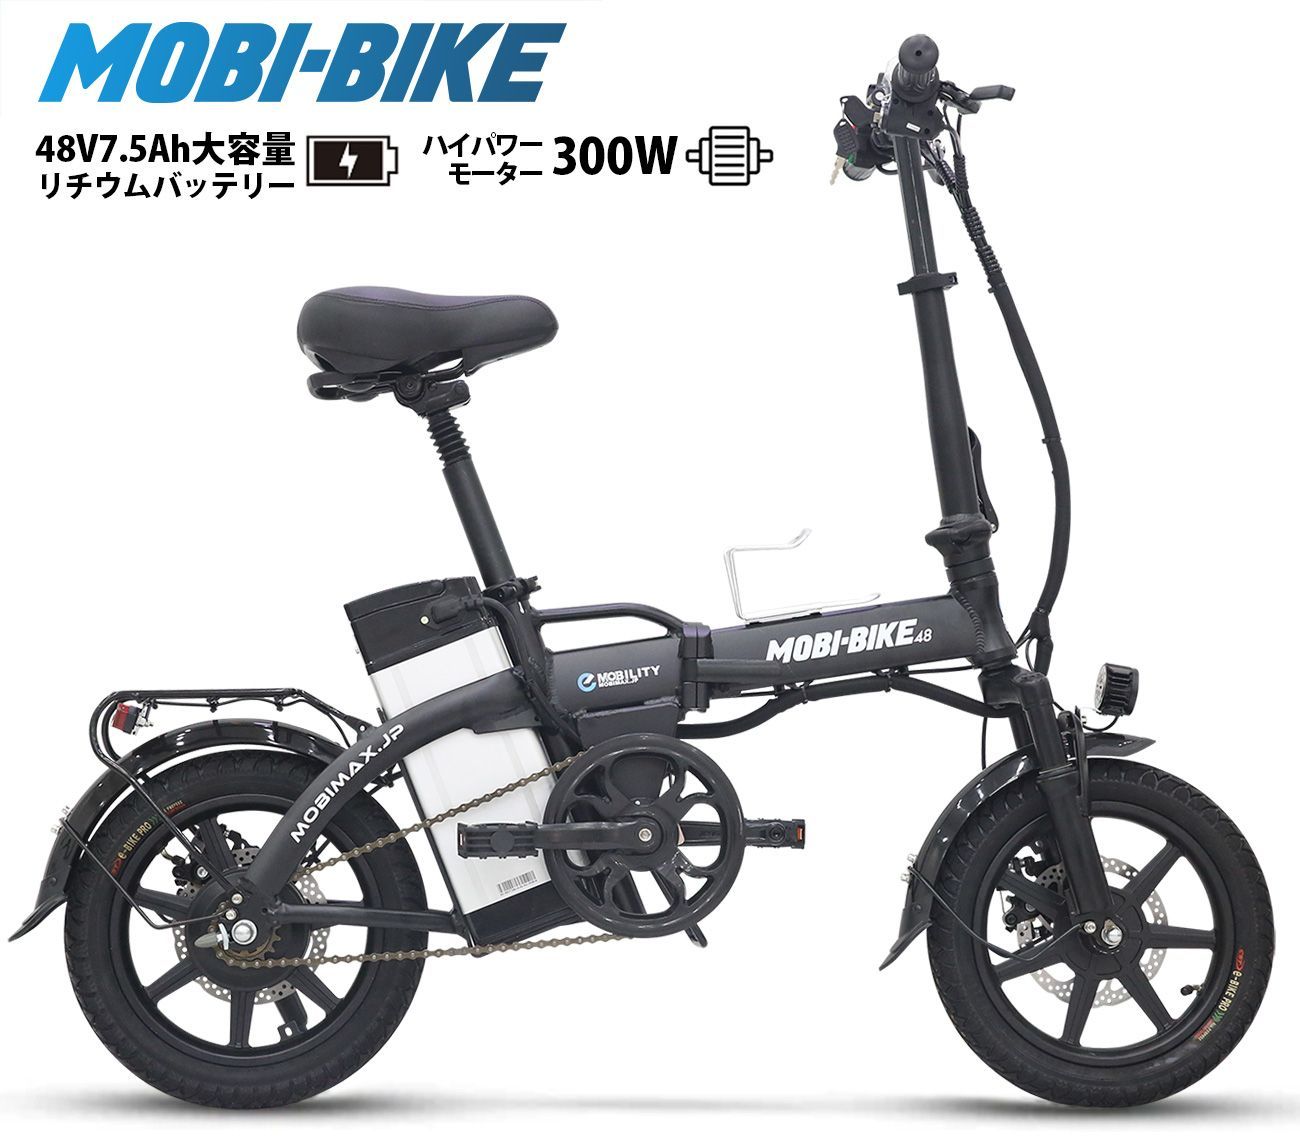 モビリティバイク MOBIBIKE - 自転車